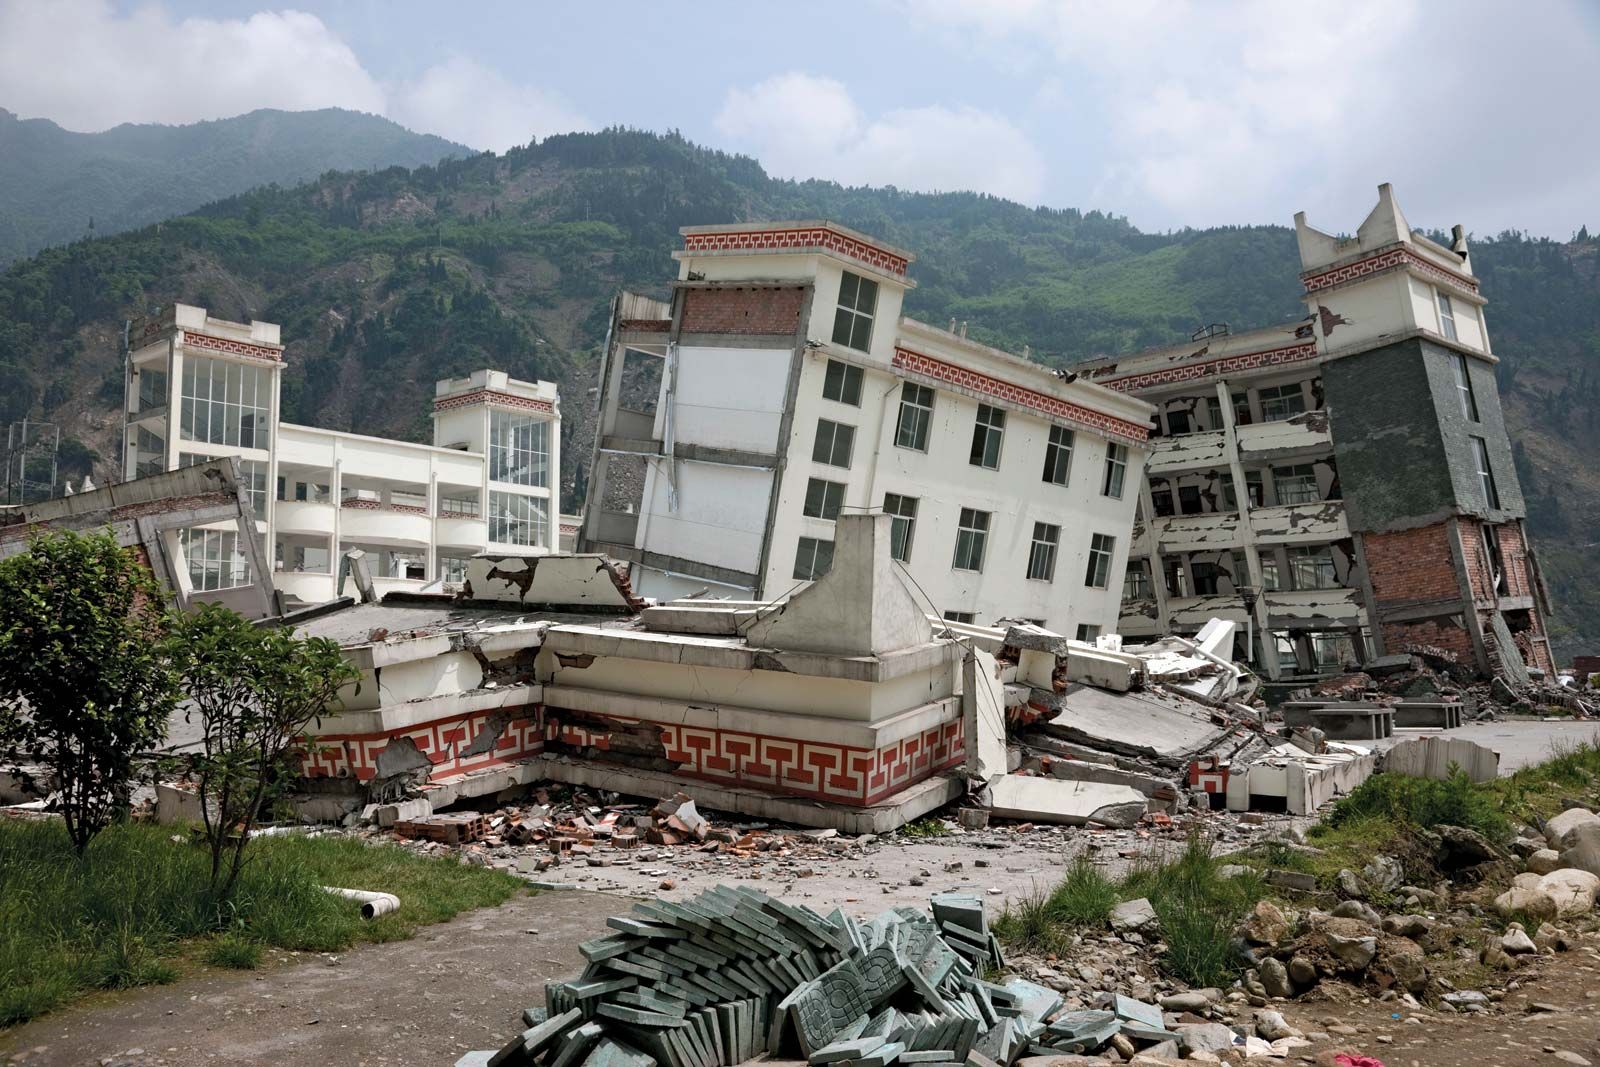 Hãi hùng những trận động đất chết chóc nhất thế kỷ XXI - Ảnh 5.